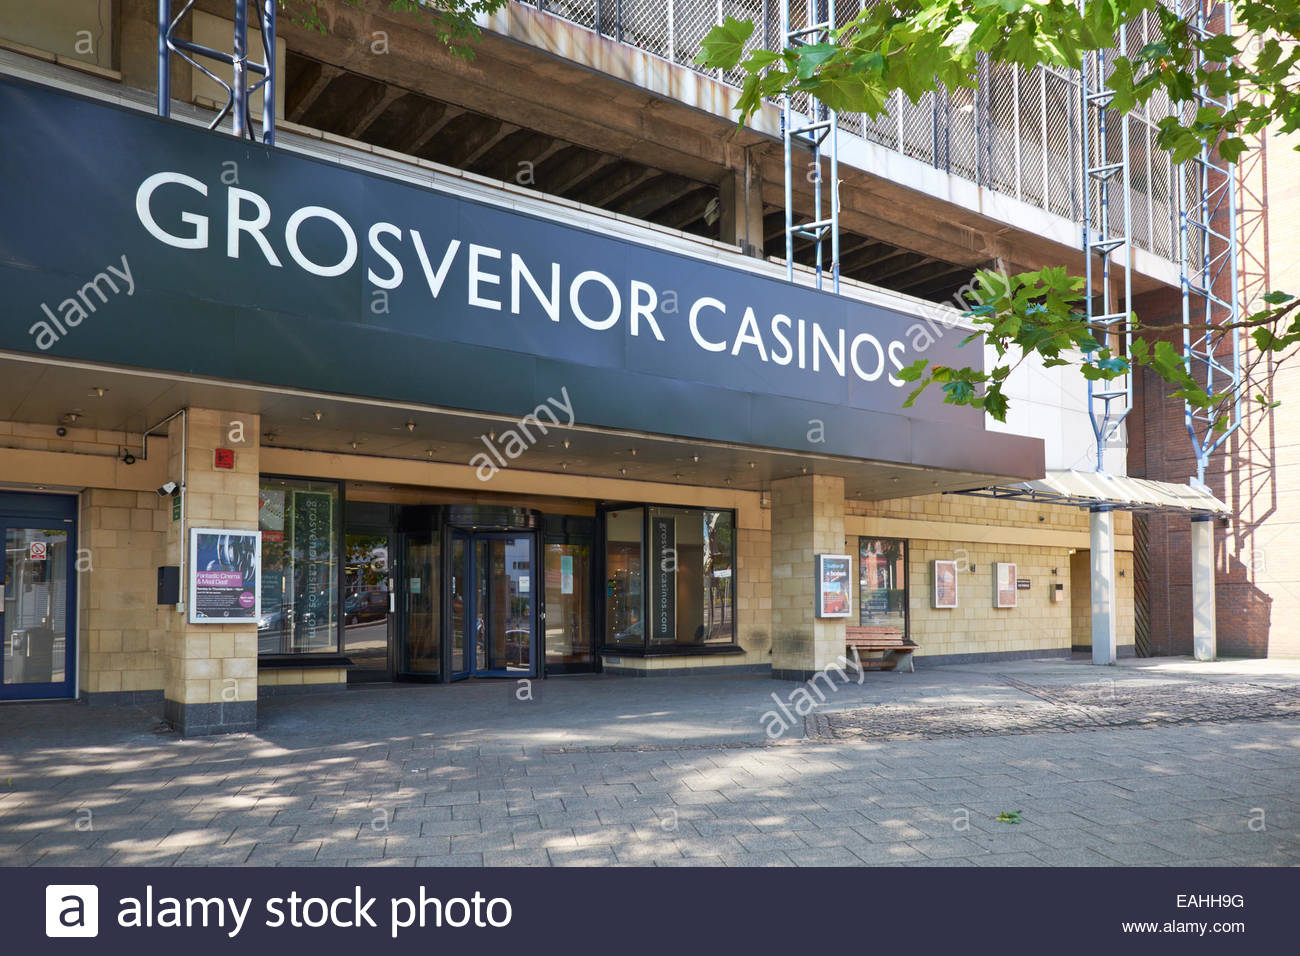 Grosvenor casino maid marian way nottingham